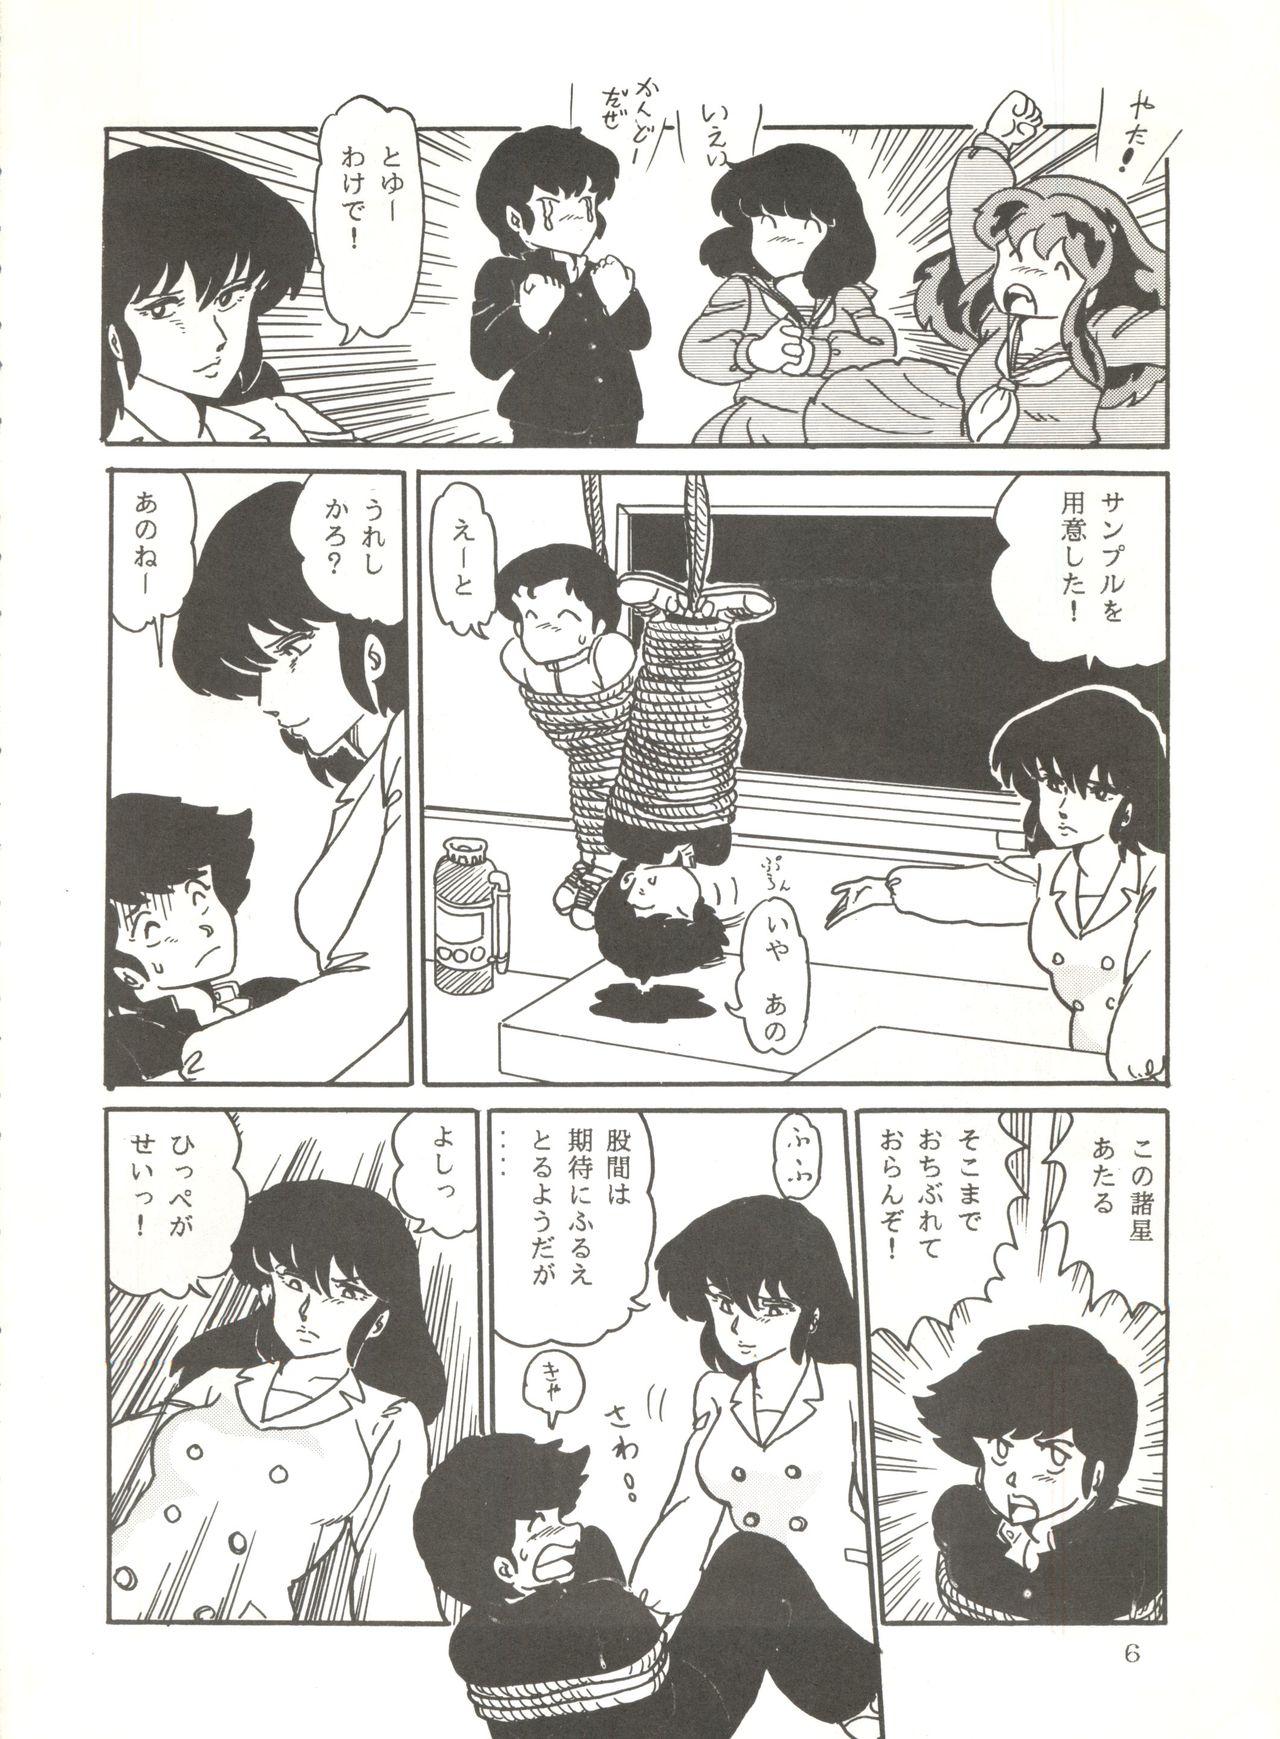 Pendeja Shijou Saiaku no Lum 4 - Urusei yatsura Cheating - Page 5